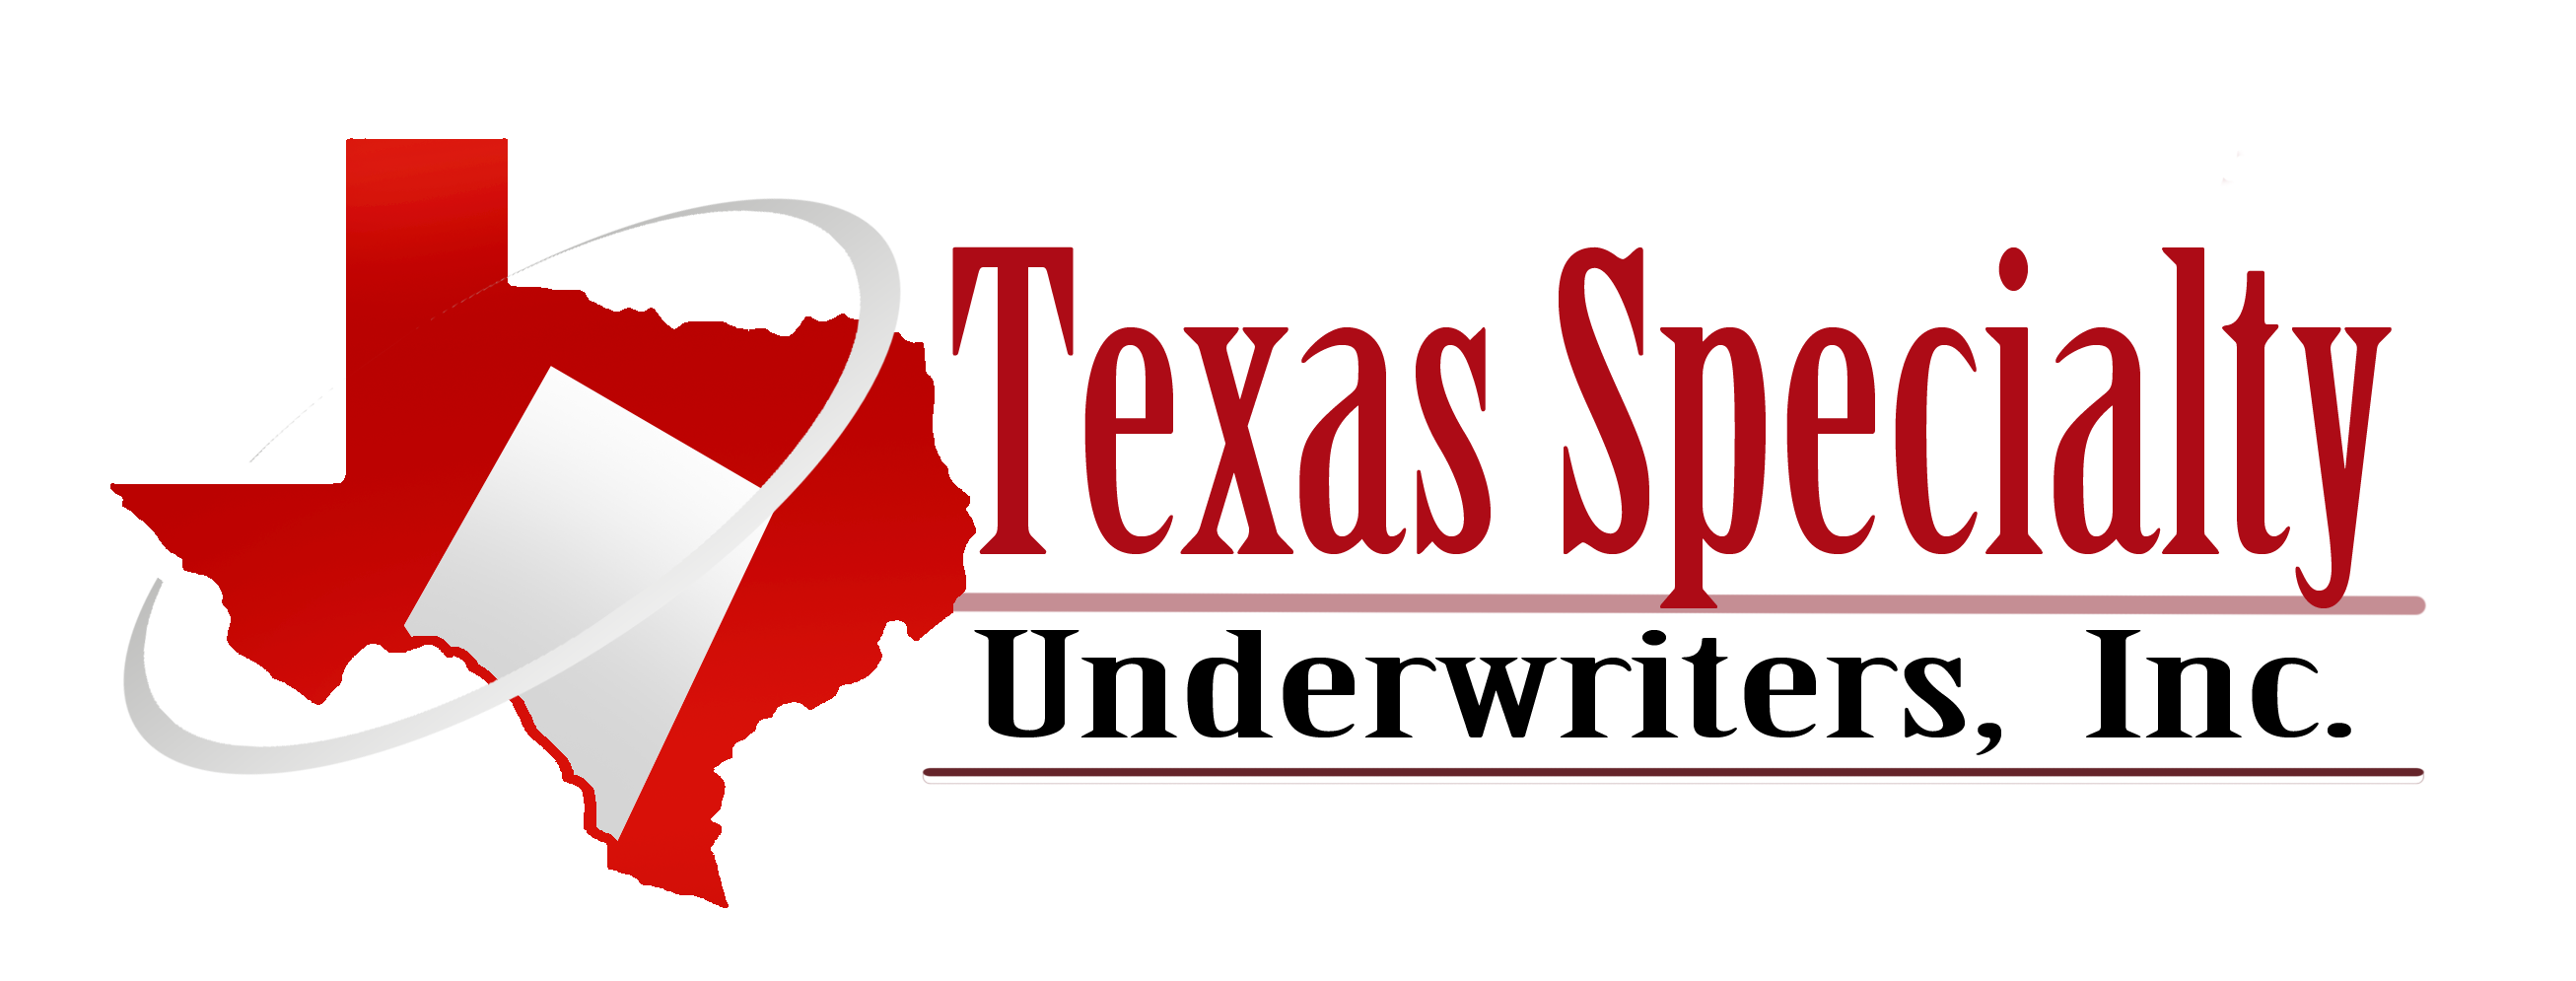 Texas Specialty Underwriters, Inc. logo